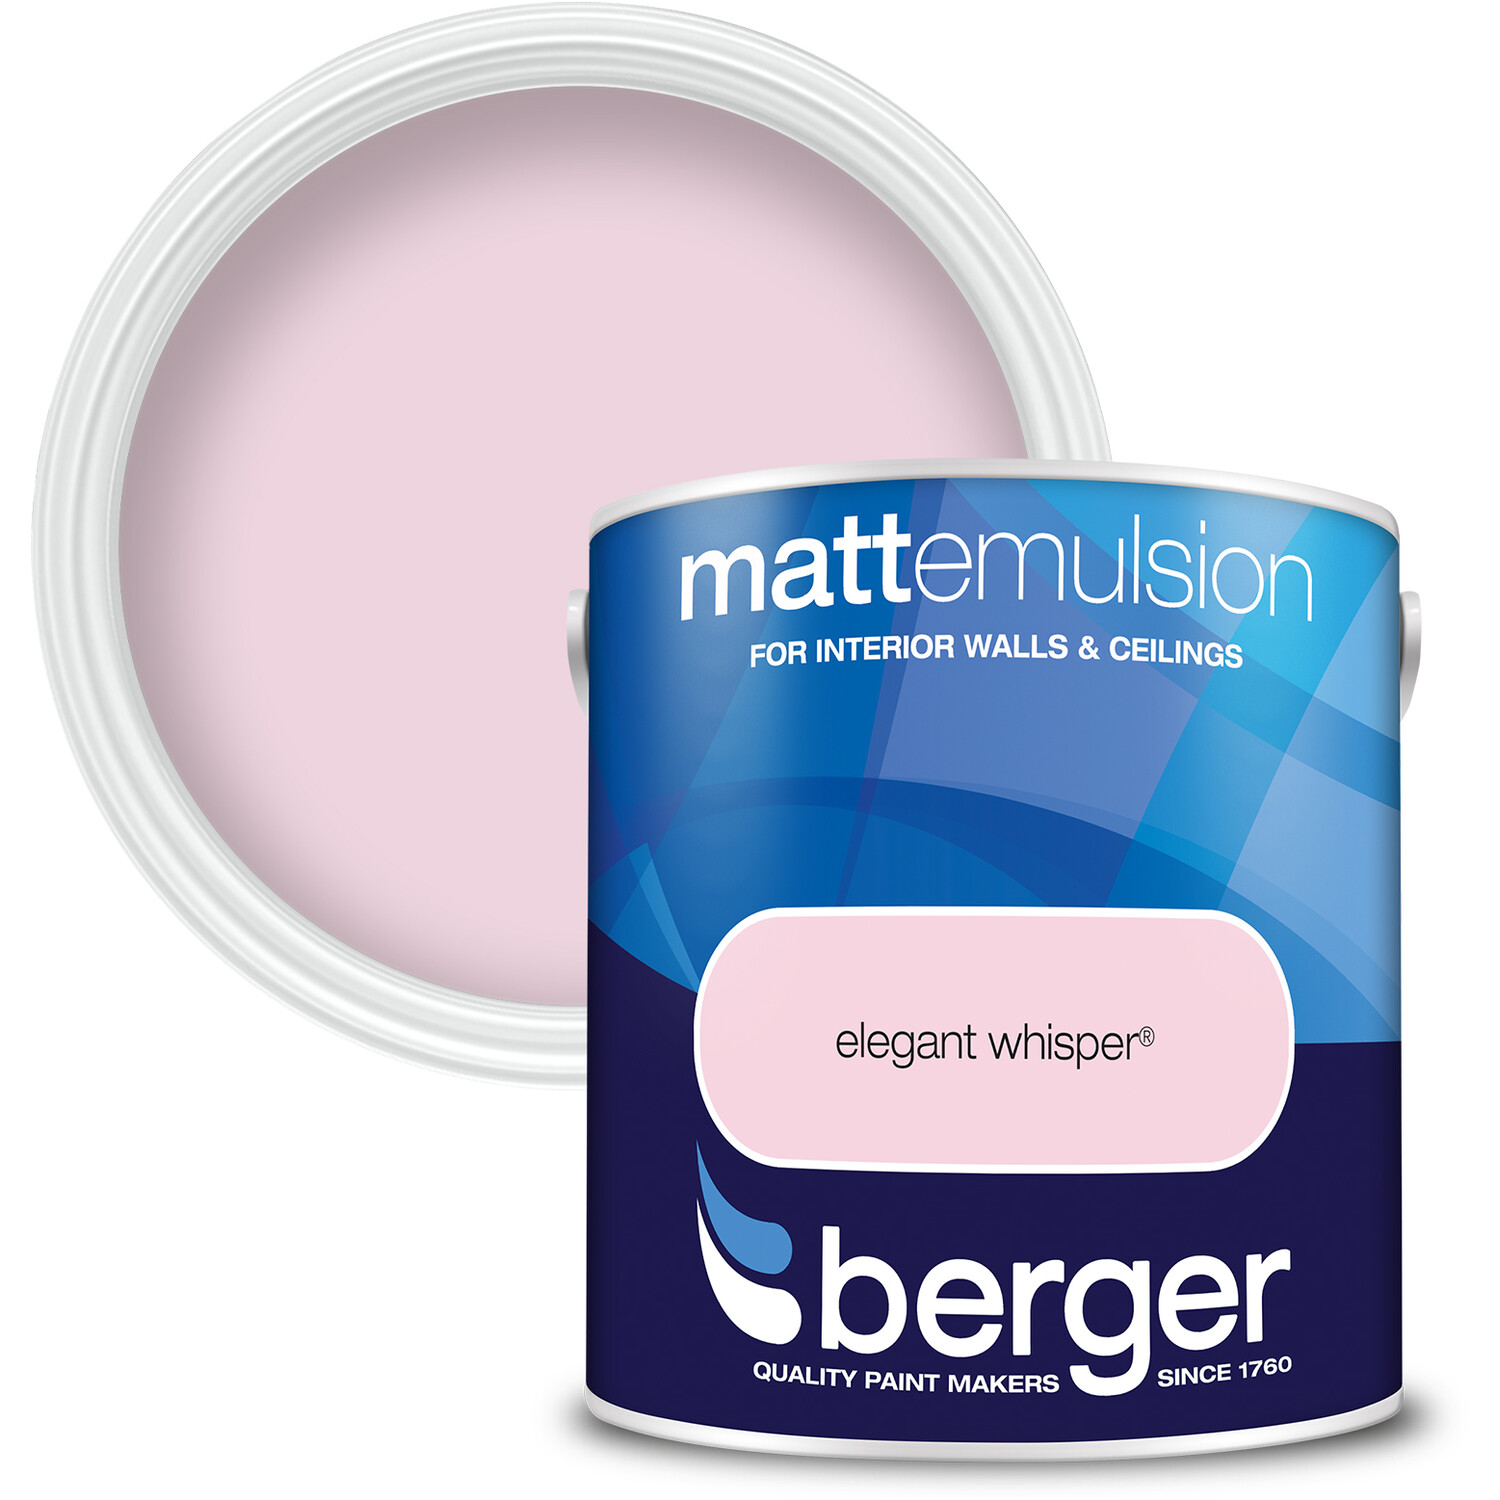 Berger Walls and Ceilings Elegant Whisper Matt Emulsion Paint 2.5L Image 1